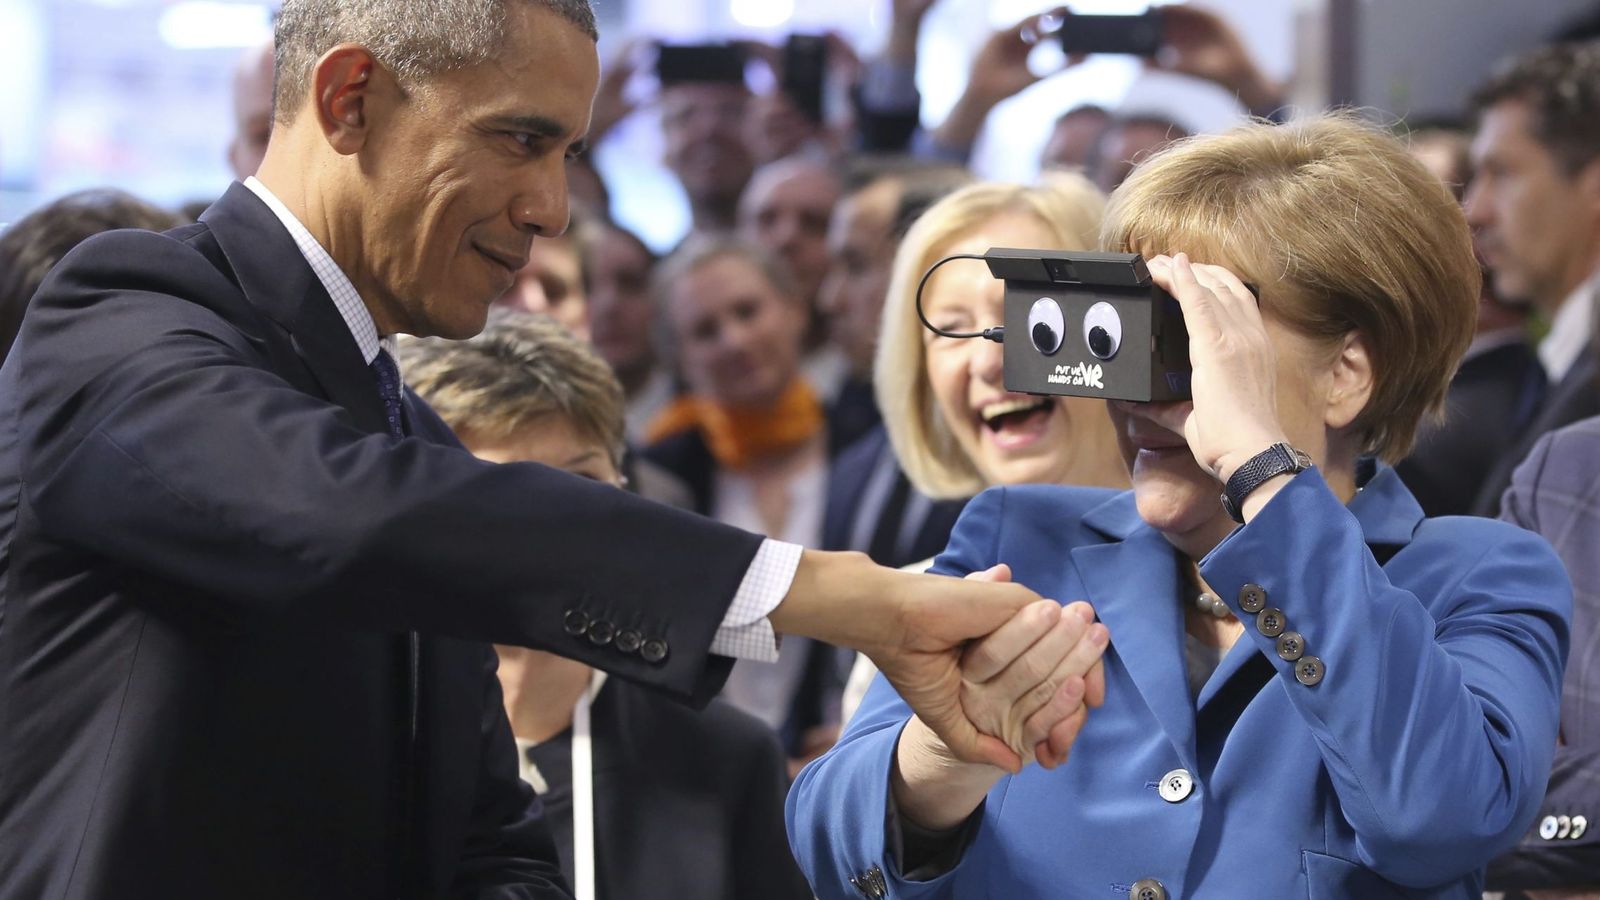 Foto: La canciller Angela Merkel utiliza unas gafas de realidad virtual junto al presidente de Estados Unidos, Barack Obama, en Hannover, el 25 de abril de 2016 (EFE)